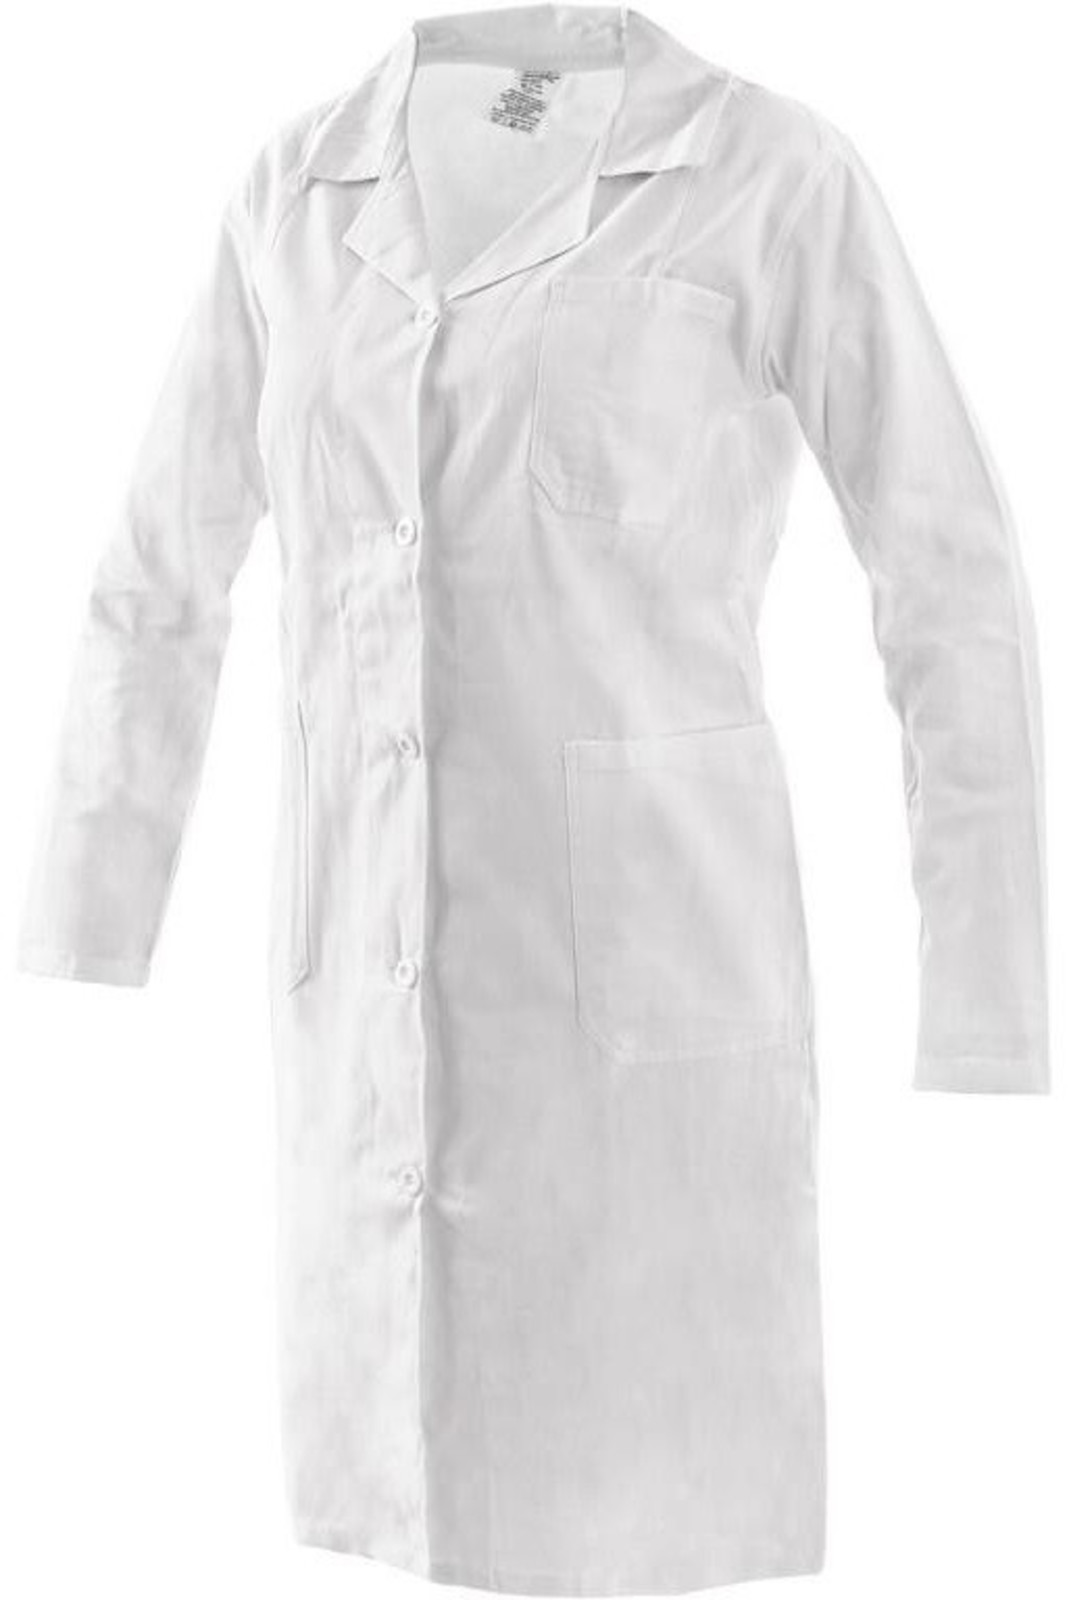 Dámsky plášť CXS EVA - veľkosť: 46, farba: biela